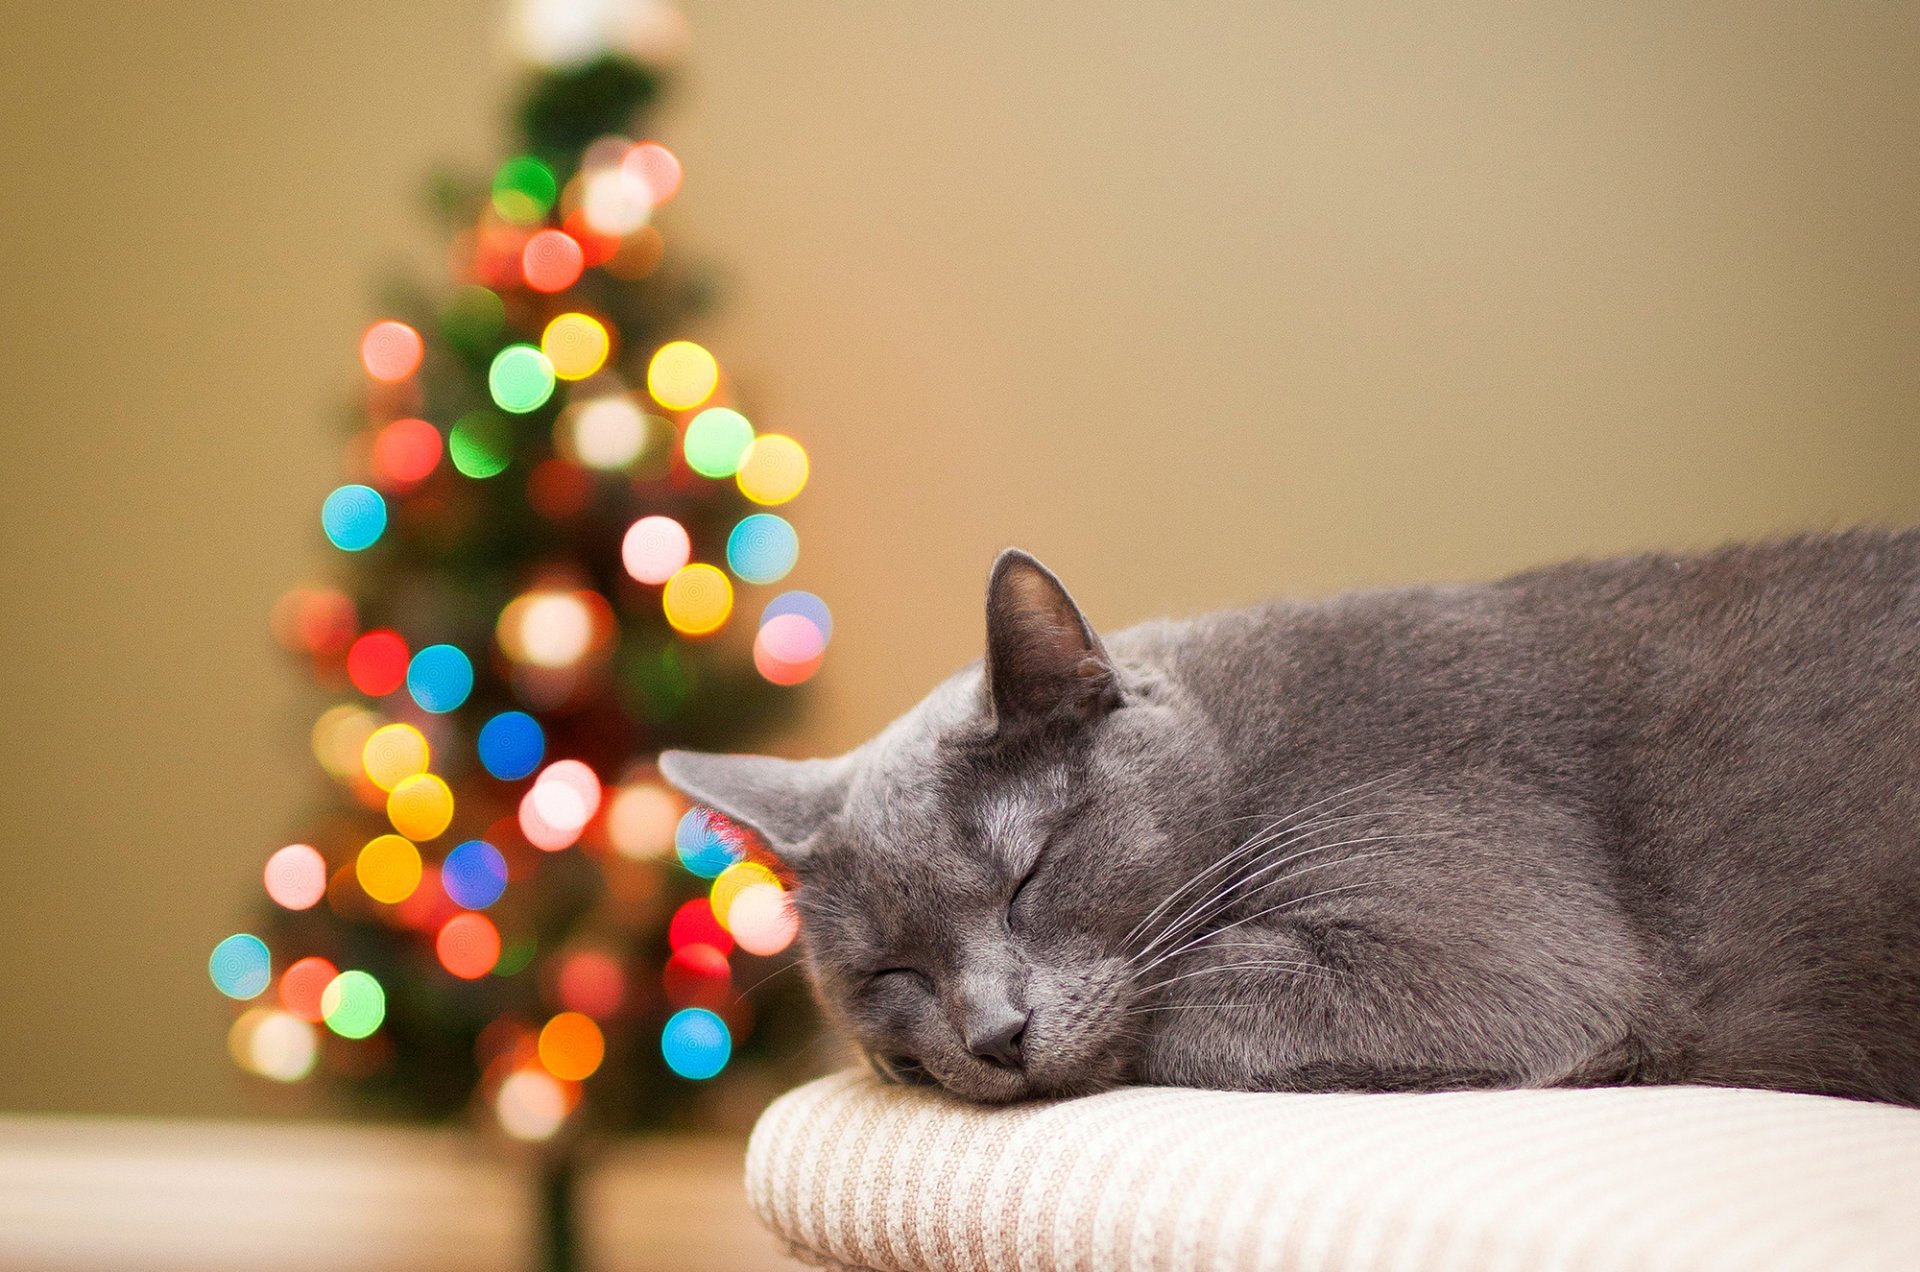 кошка серая кот спит елка огни боке праздники